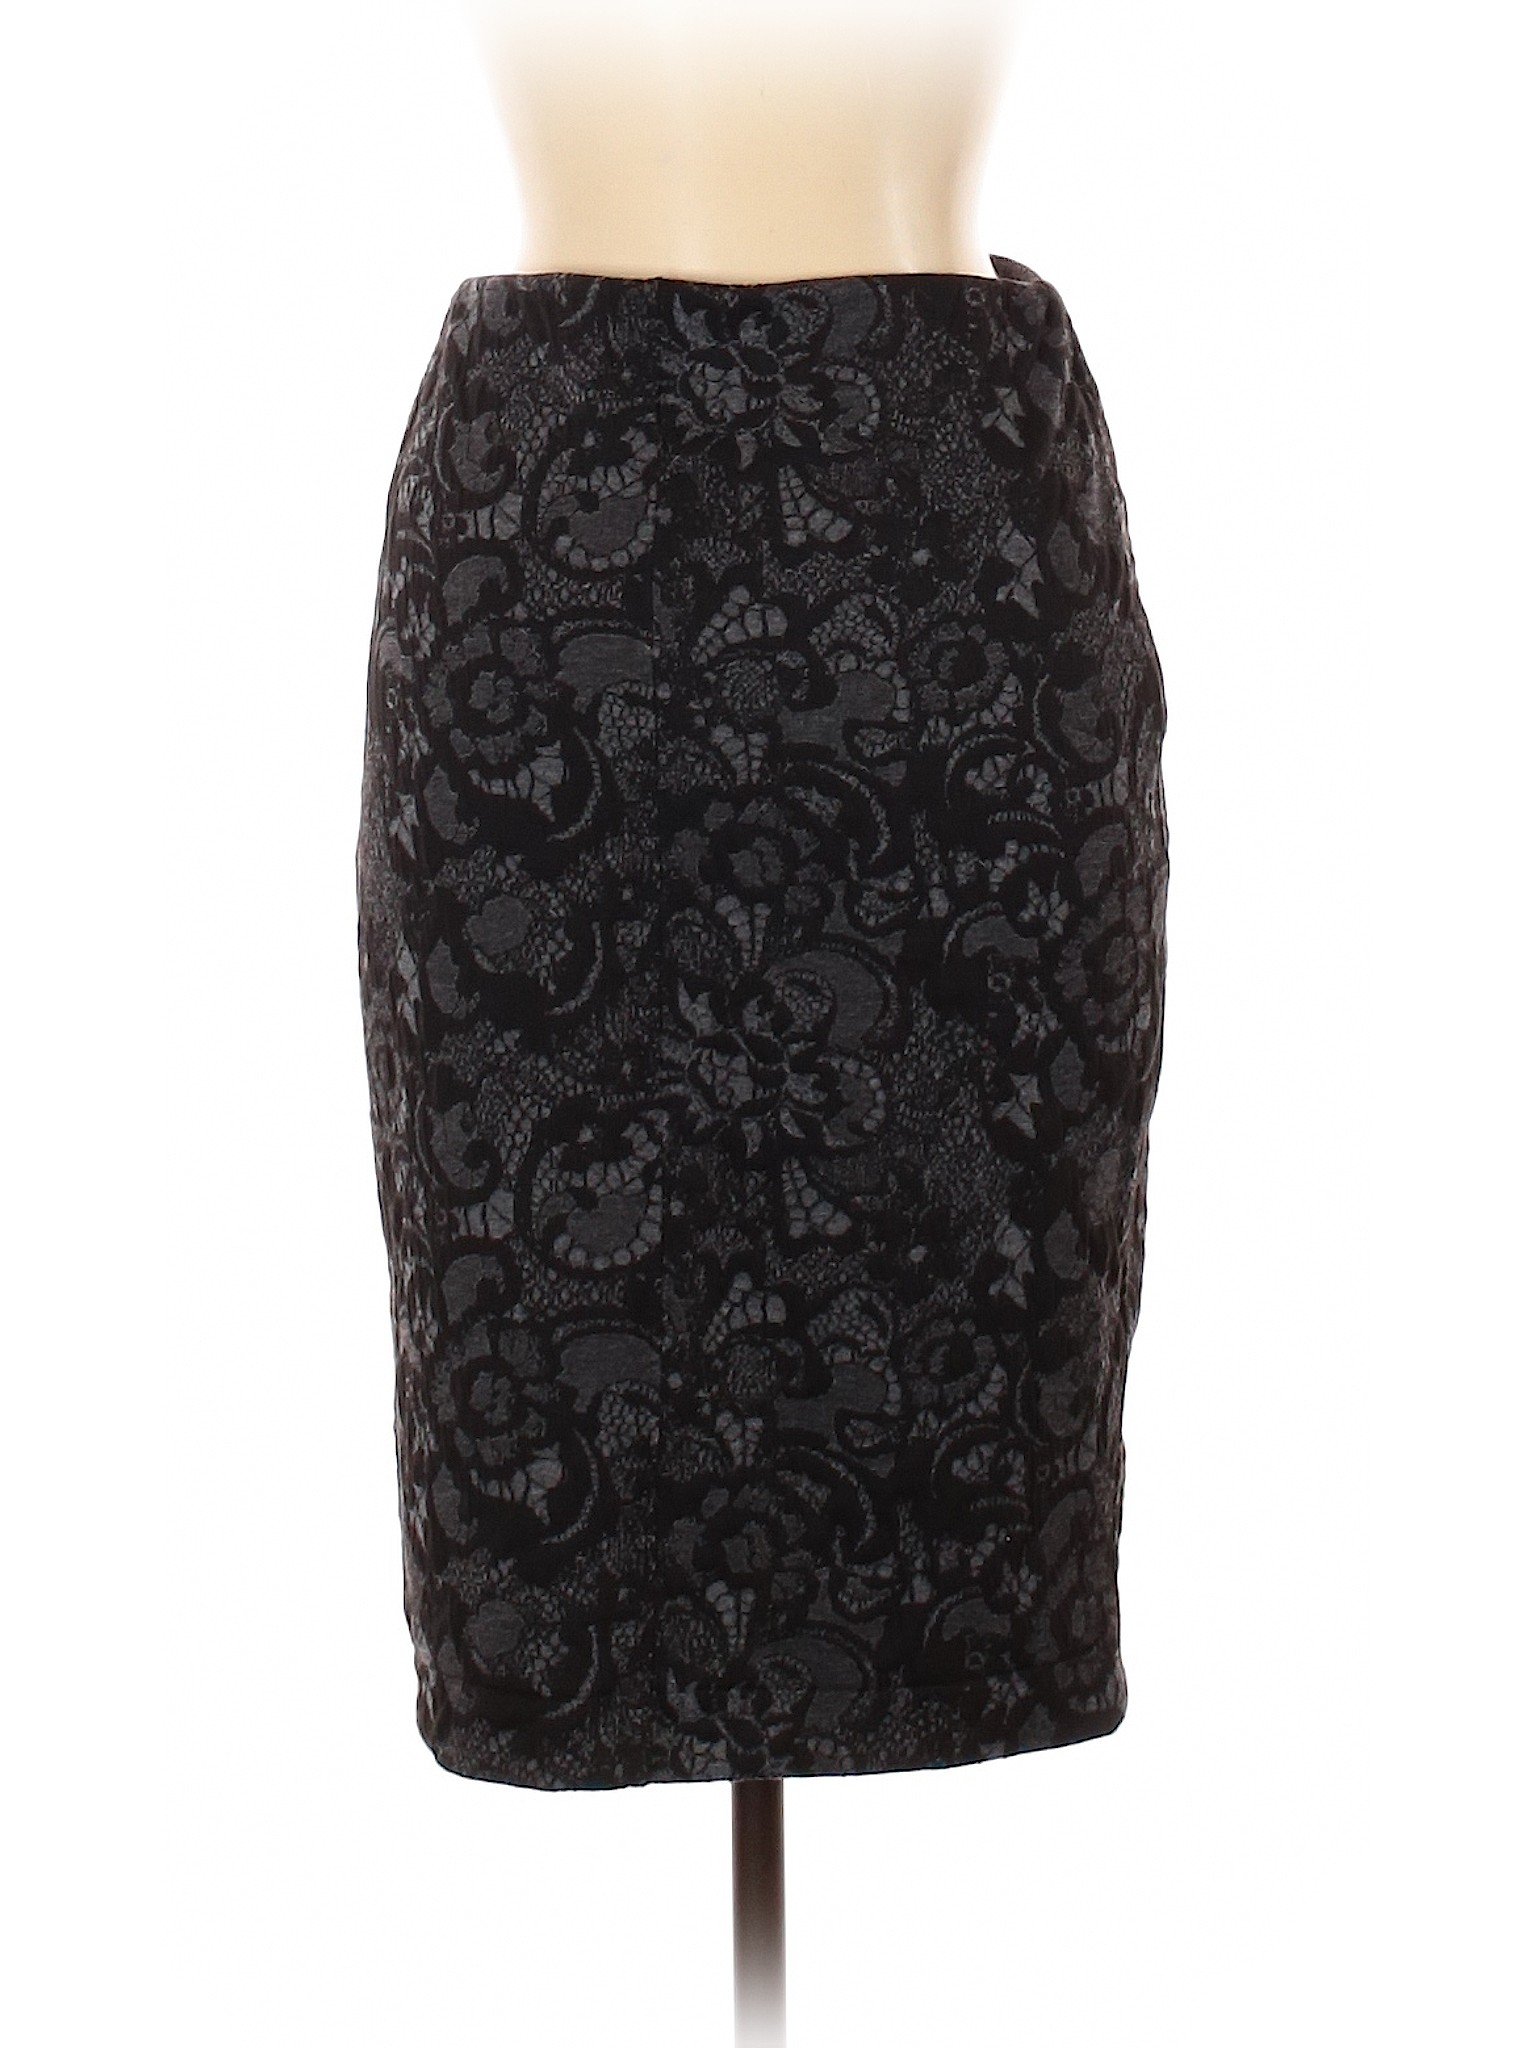 Joe Fresh Women Black Casual Skirt XS | eBay